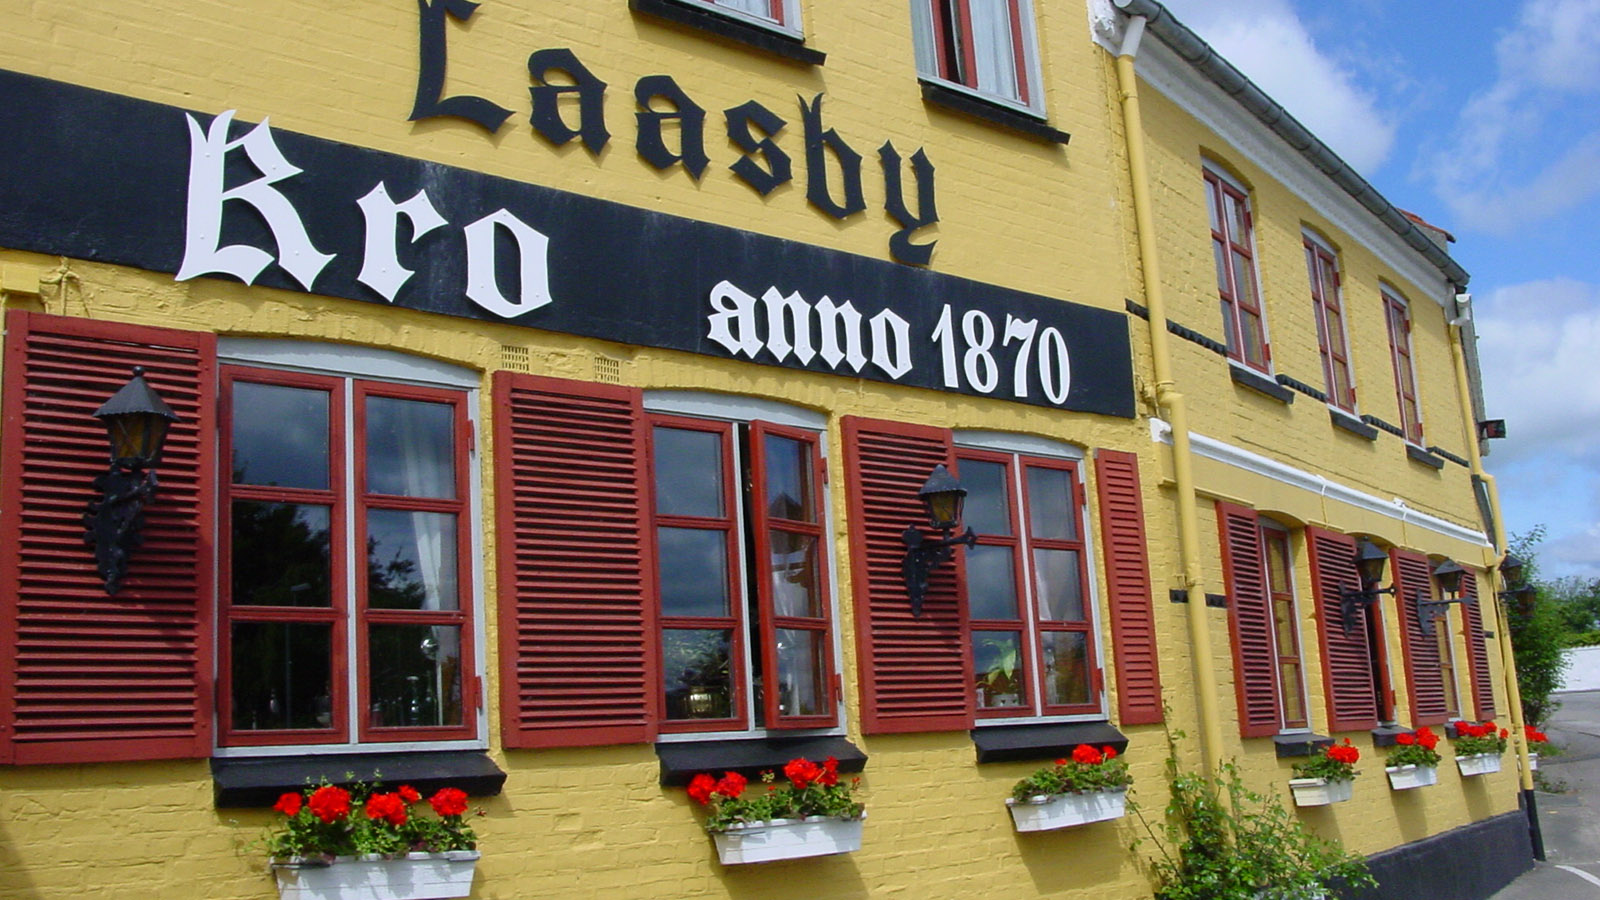 Laasby Kro bei Aarhus. Foto: Hilke Maunder